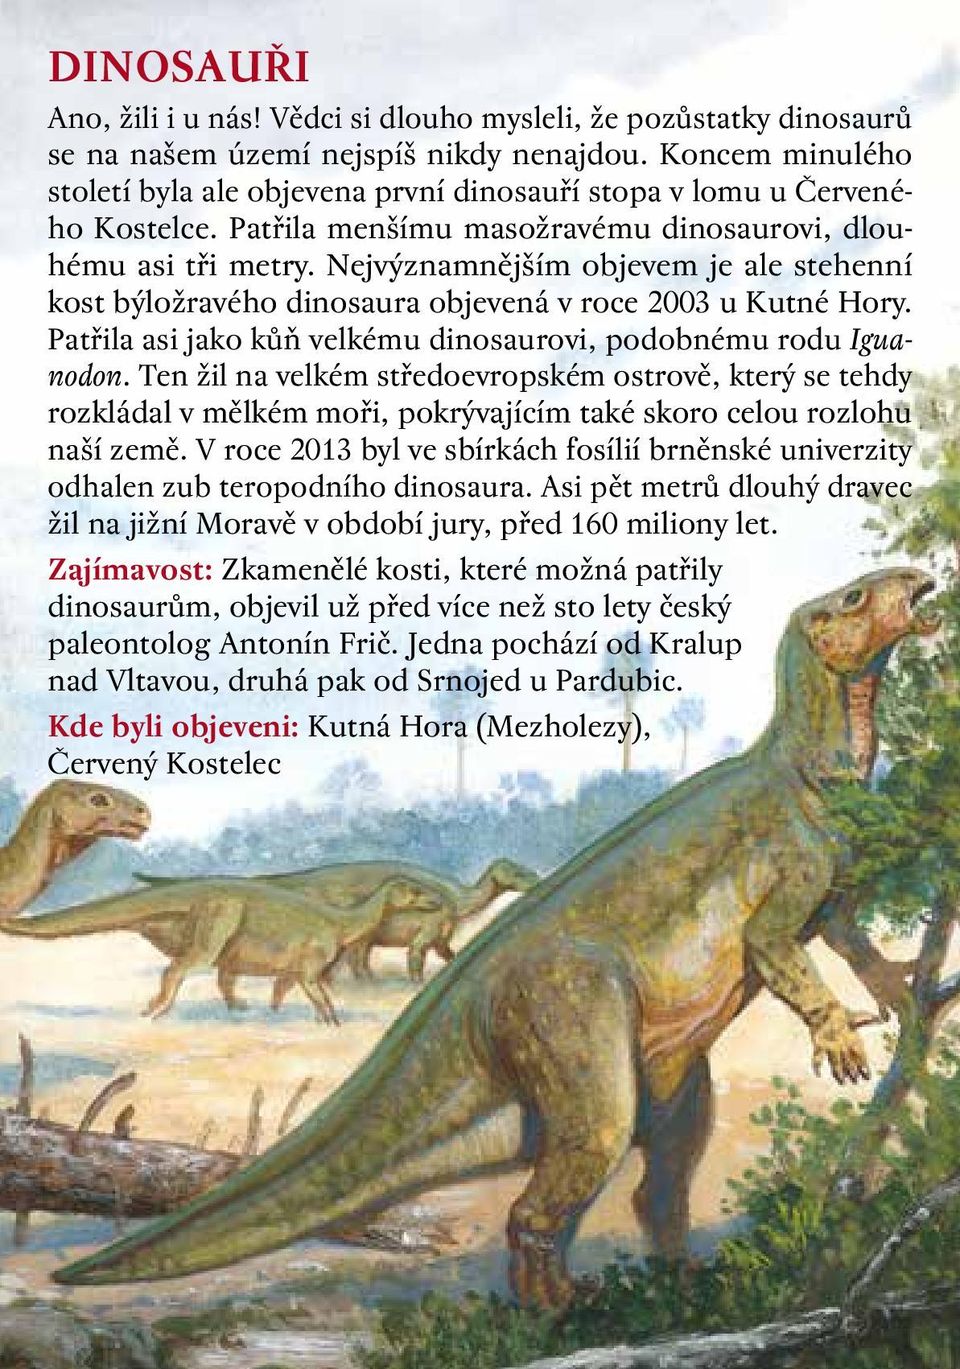 Nejvýznamnějším objevem je ale stehenní kost býložravého dinosaura objevená v roce 2003 u Kutné Hory. Patřila asi jako kůň velkému dinosaurovi, podobnému rodu Iguanodon.